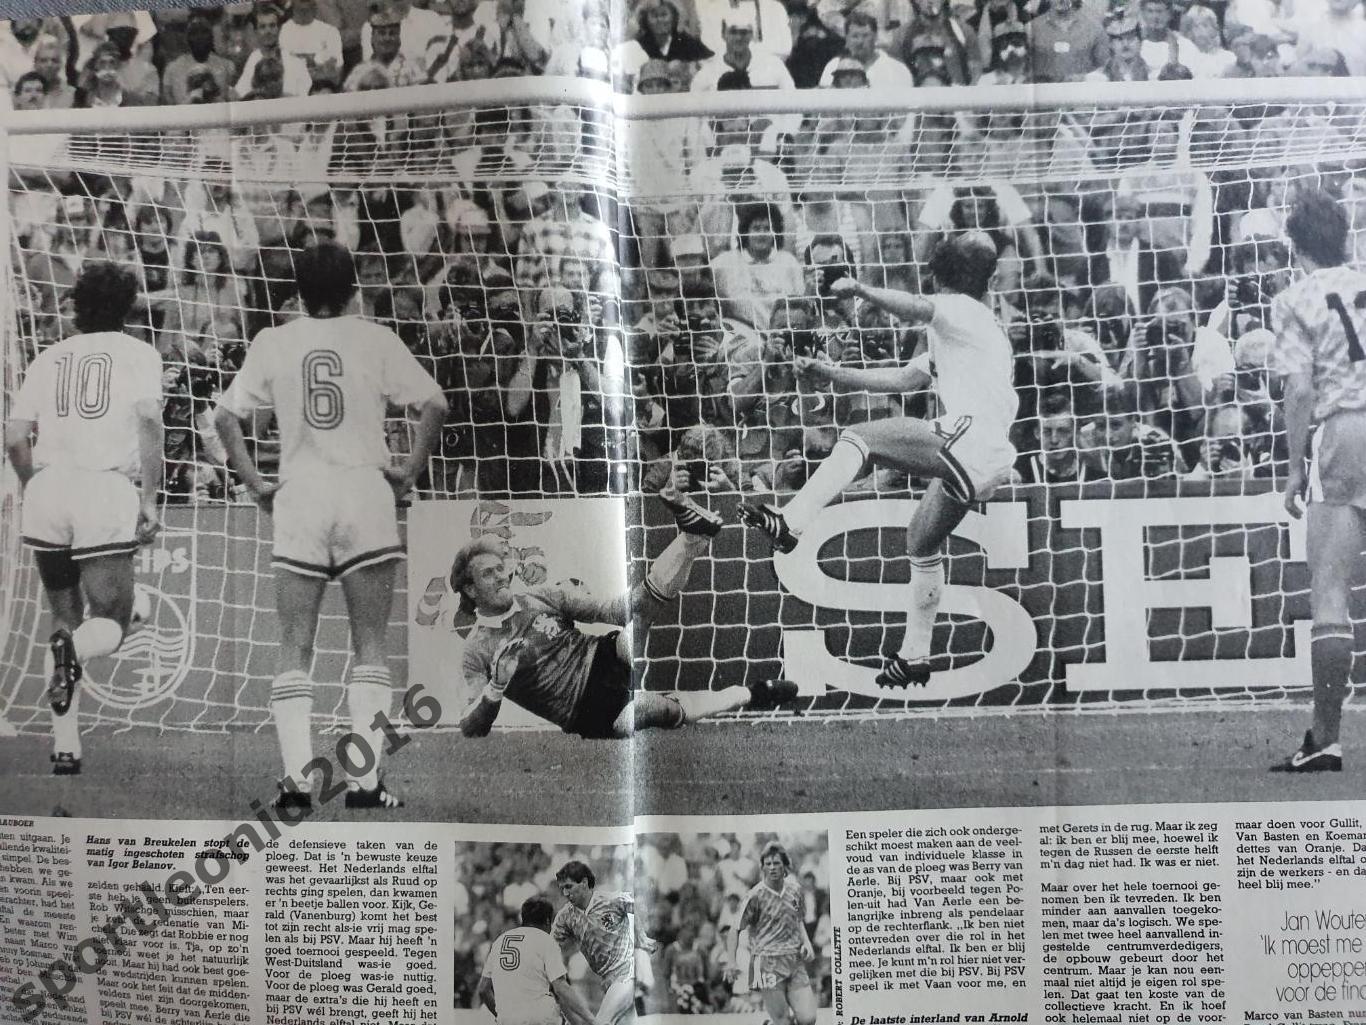 Voetbal International 1988.Годовая подписка.52 номера +4 спецвыпуска к Евро-88.8 2